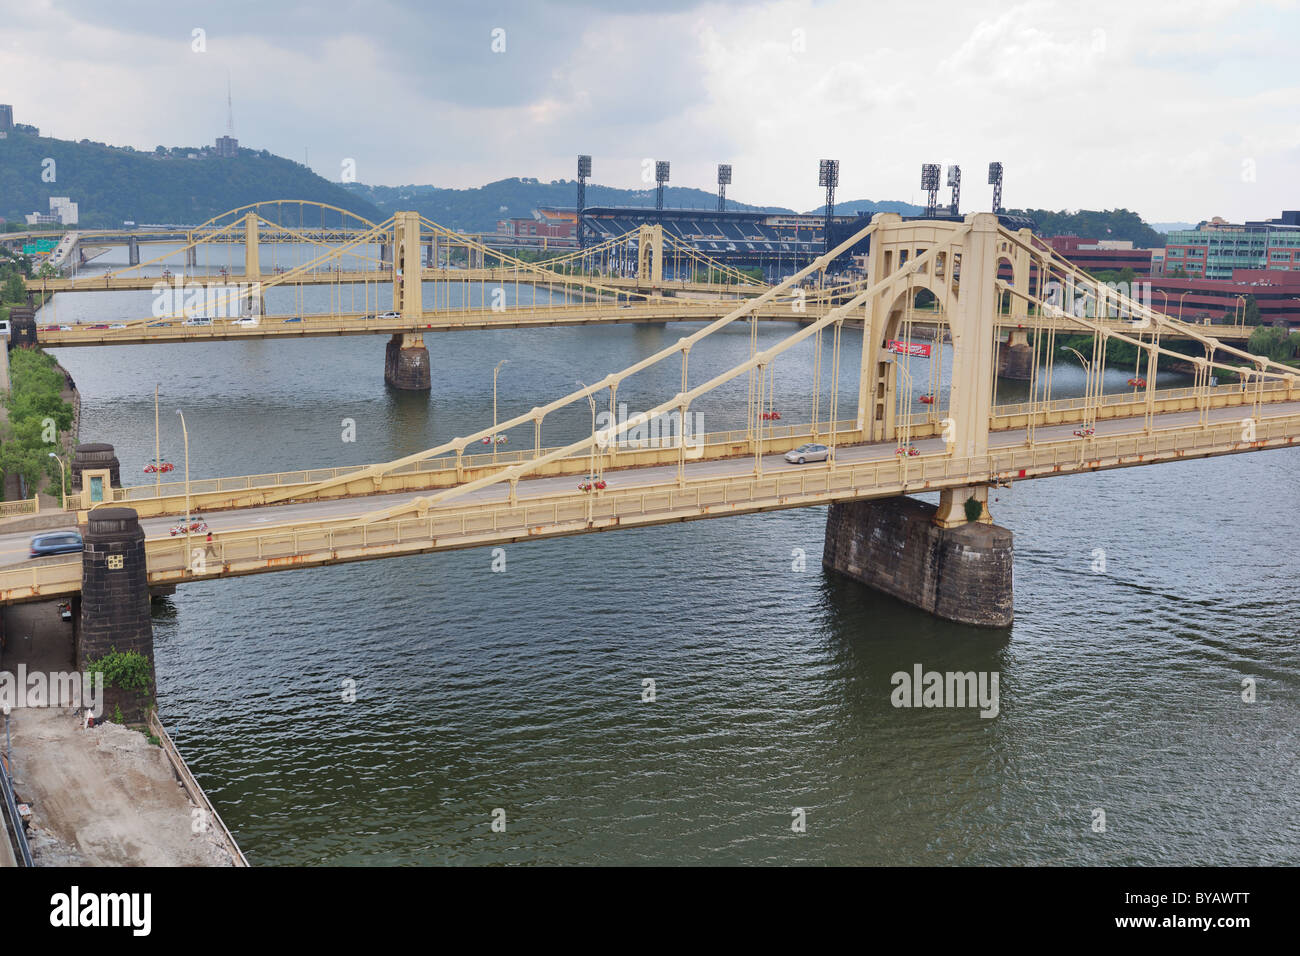 La 9e pont sur la rivière Allegheny, Pittsburgh, USA Banque D'Images